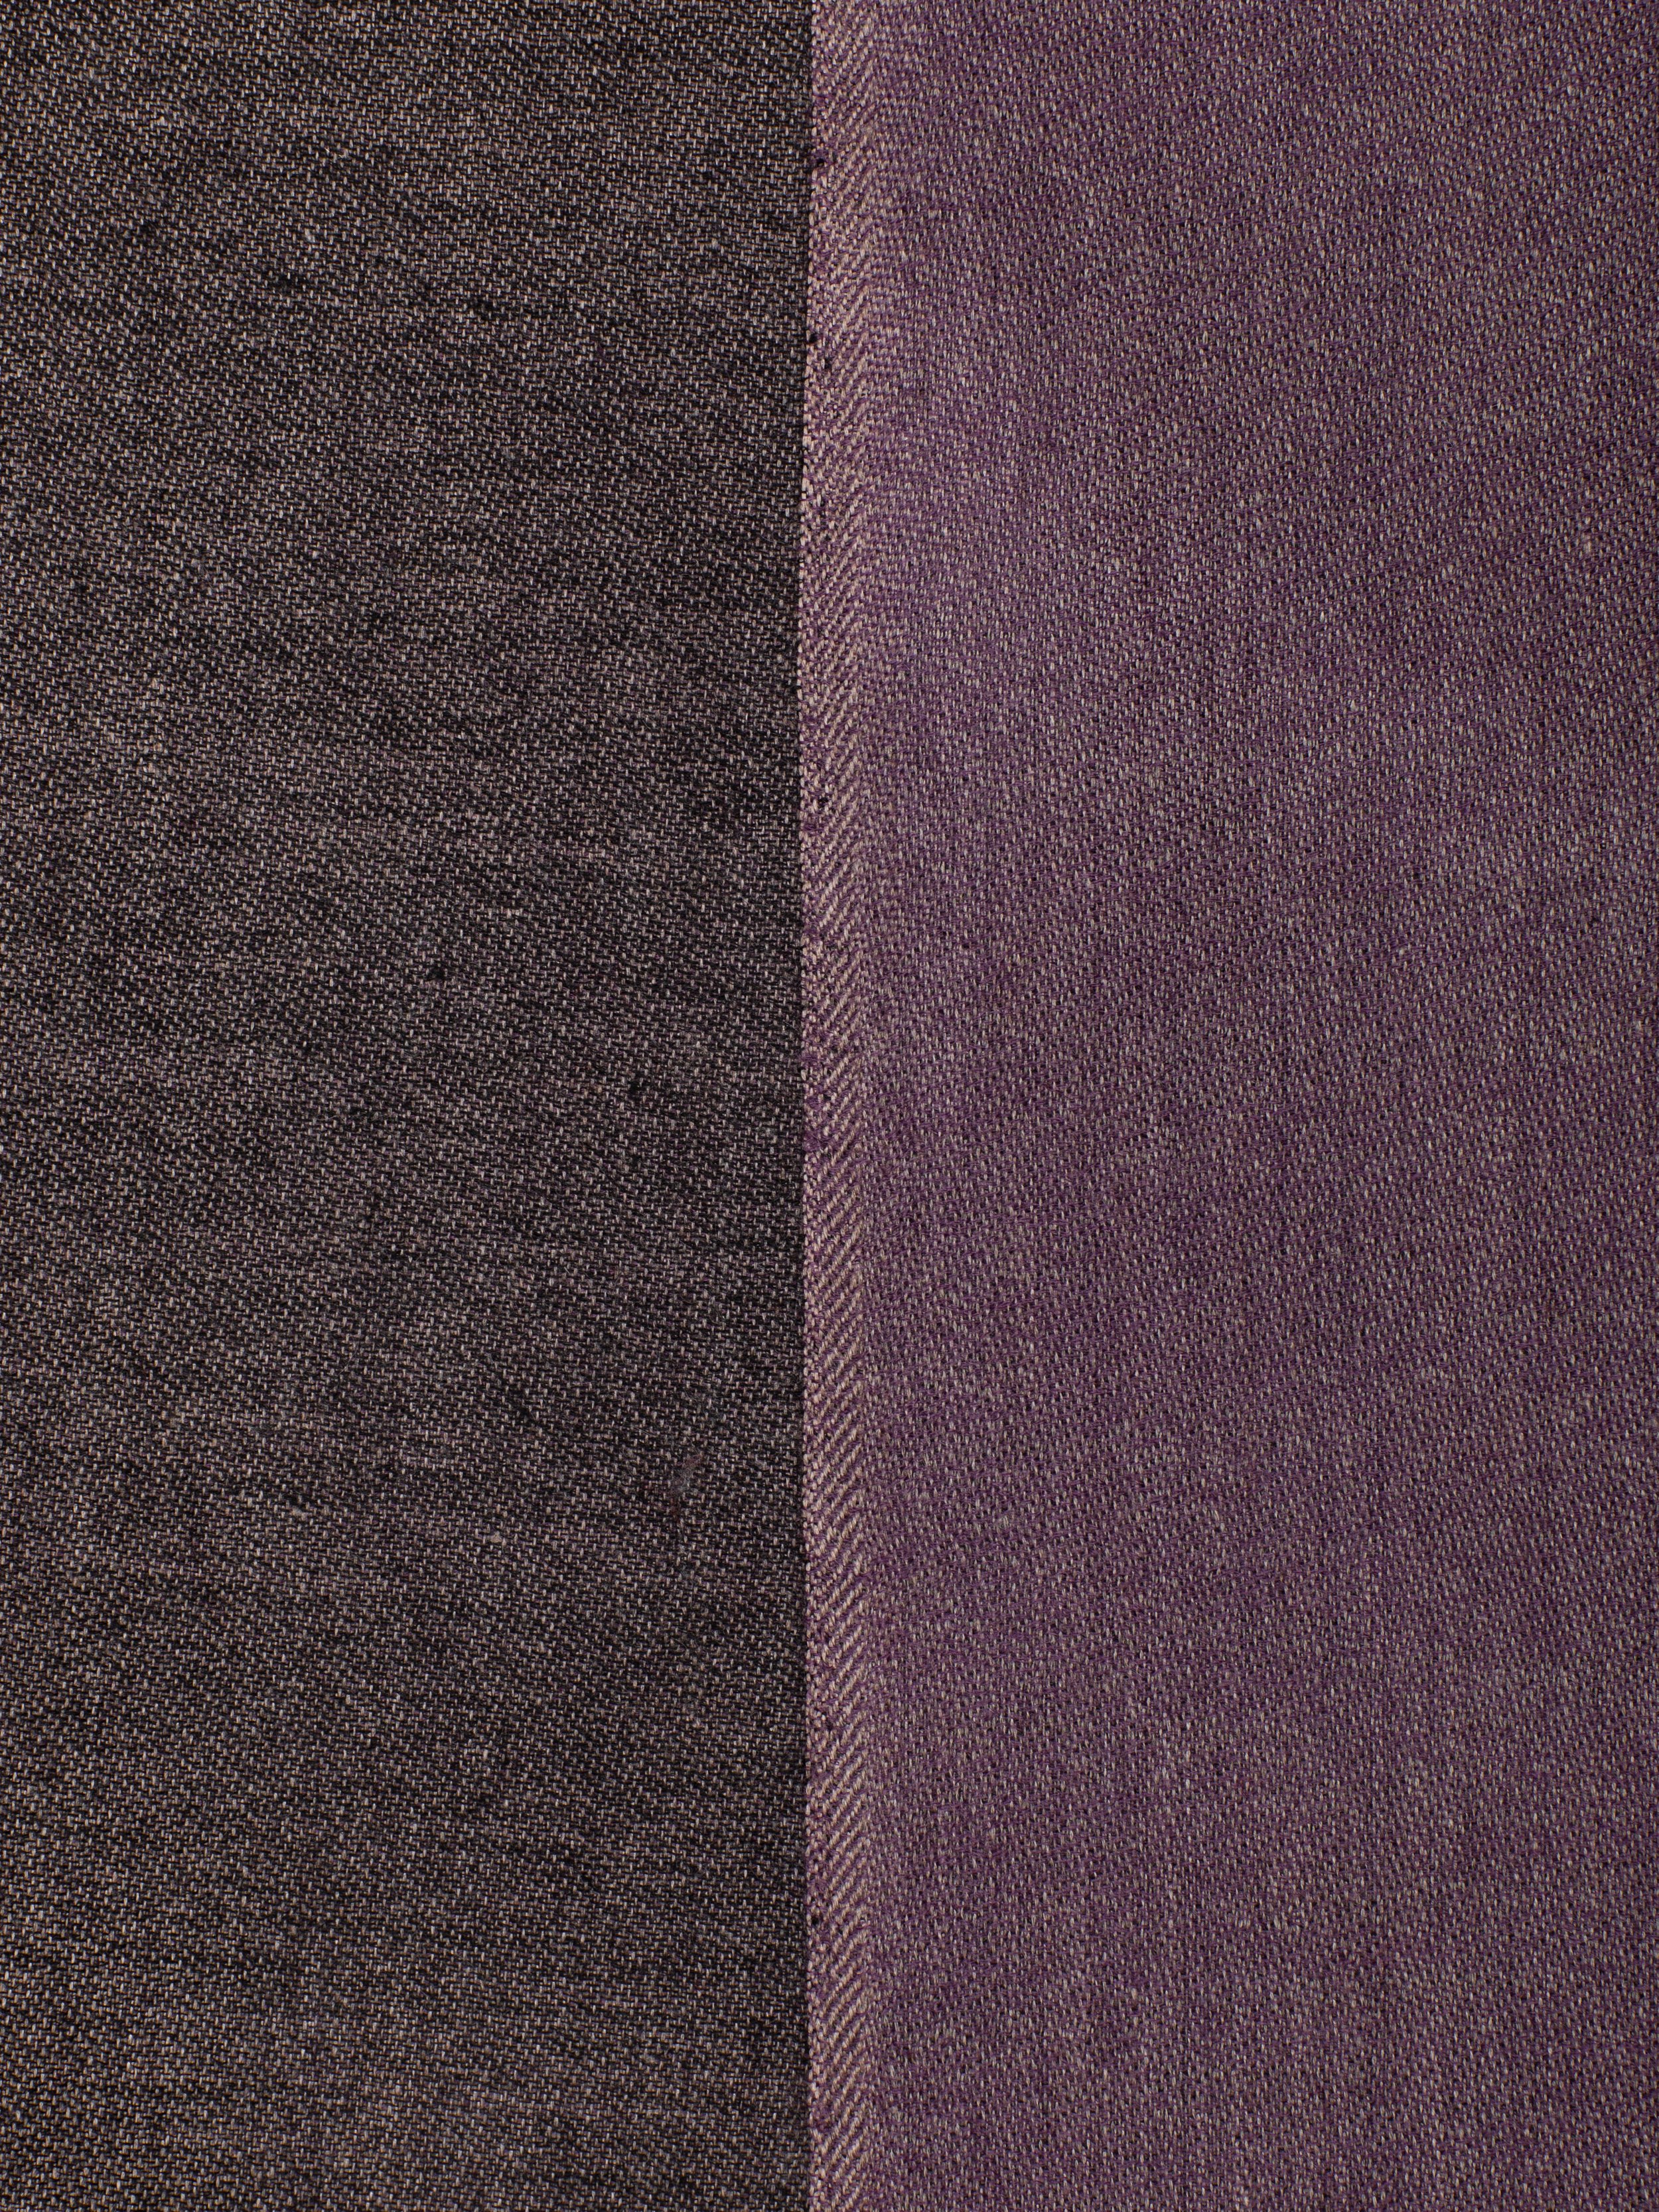 Écharpes pashmina réversibles Noir-Violet